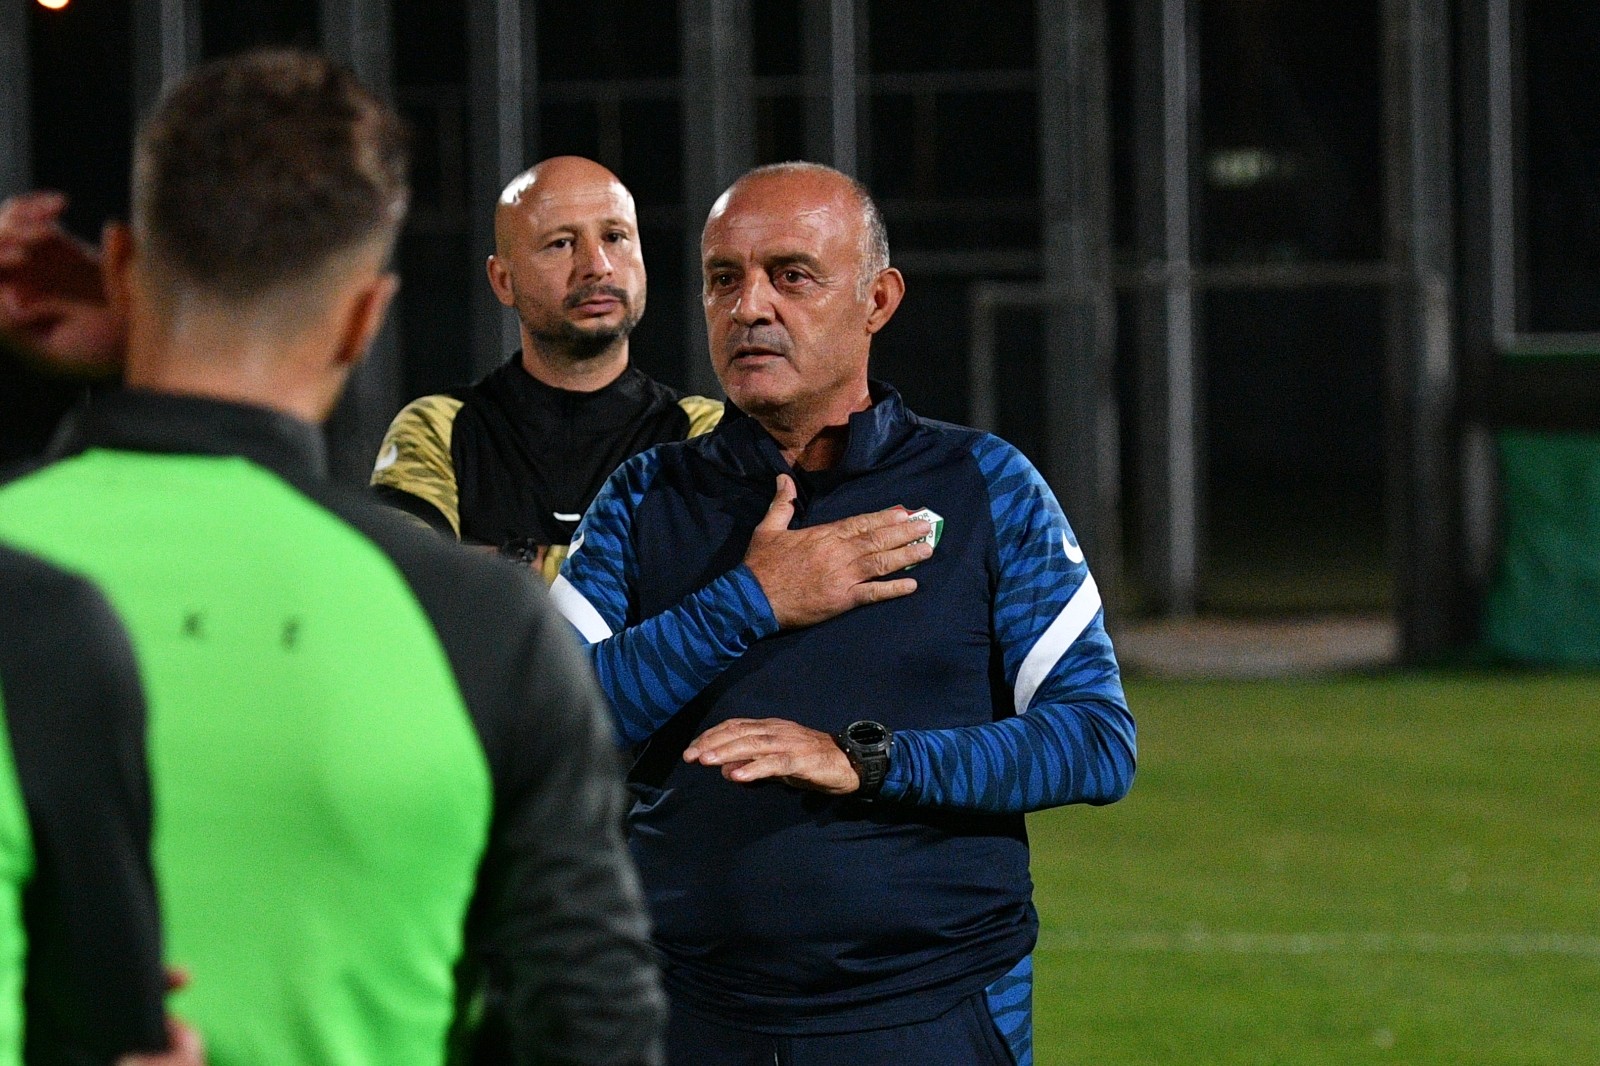 Bursaspor’un yeni teknik direktörü Özcan Bizati ilk idmanına çıktı #bursa